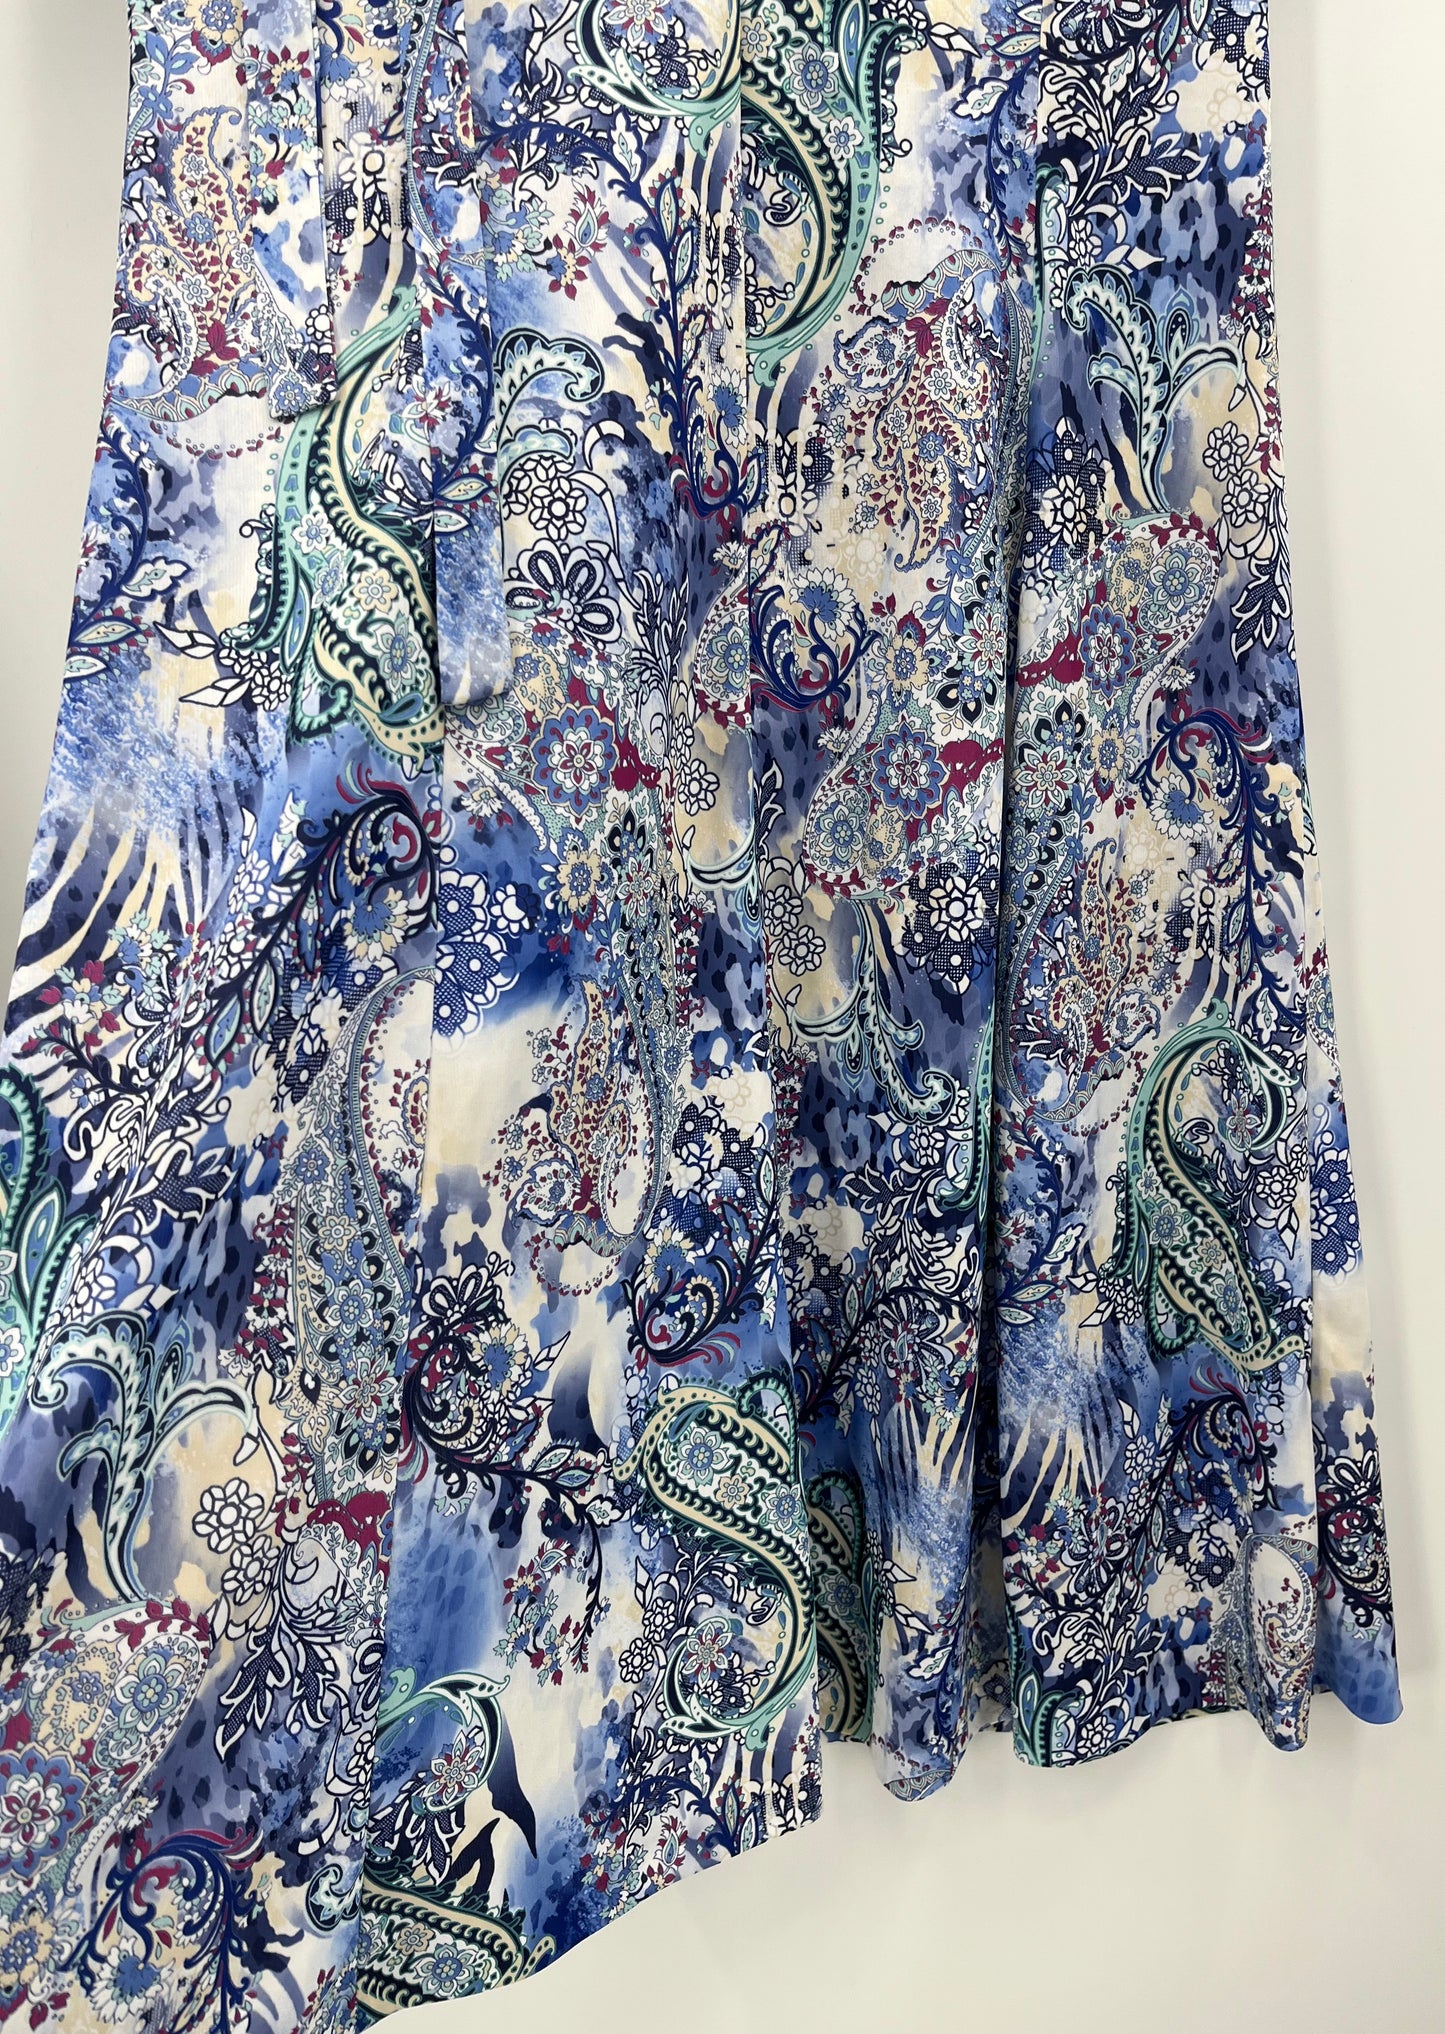 Åshild, paisleykuvioinen mekko ja vyö, 90-luku, koko 38-40